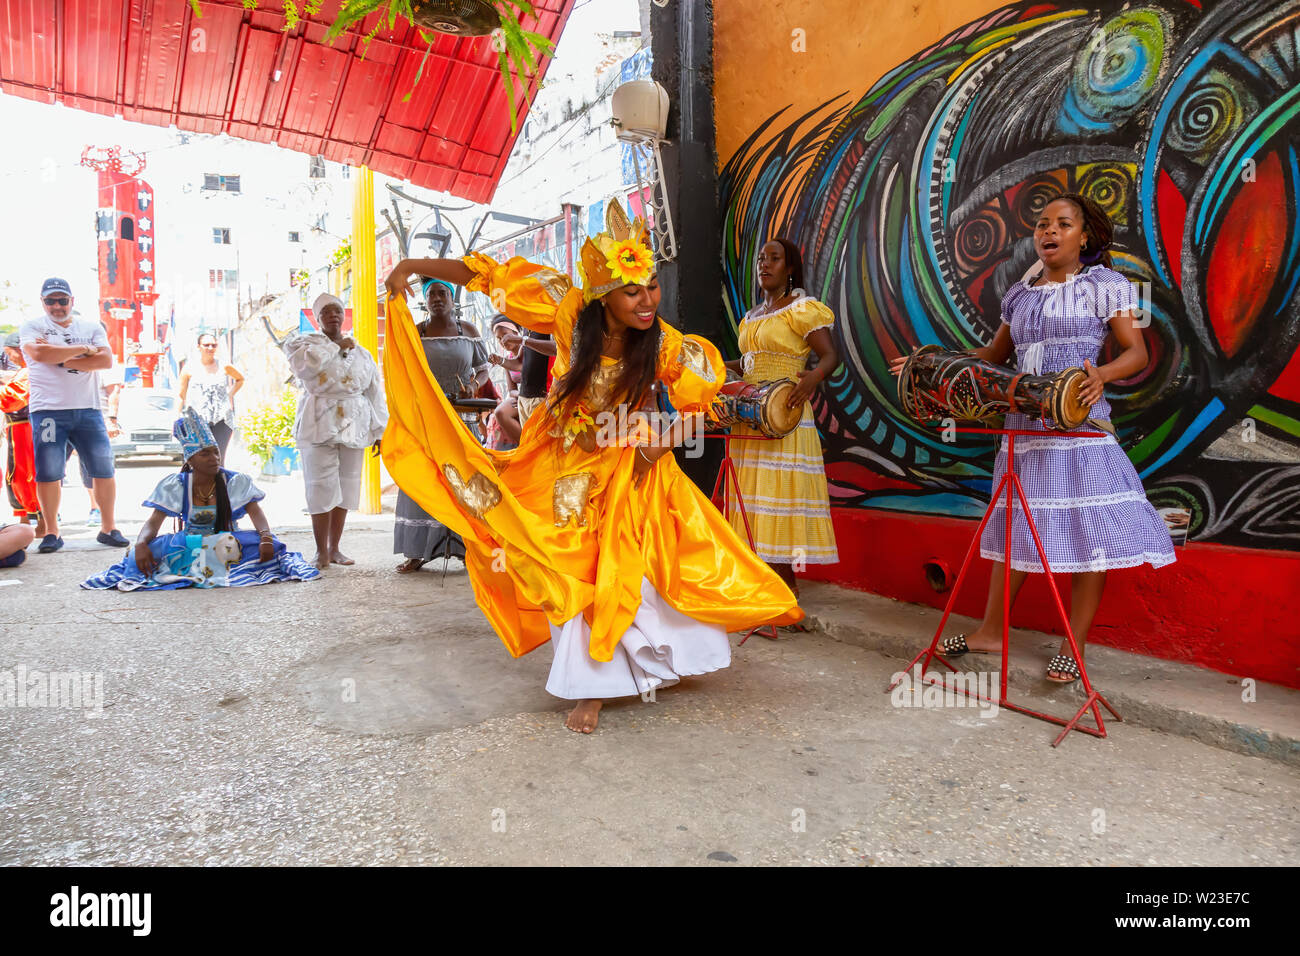 L'Avana, Cuba - 29 Maggio 2019: il popolo cubano sta eseguendo una danza africana nella vecchia città dell'Avana, capitale di Cuba, durante una luminosa e soleggiata giornata. Foto Stock